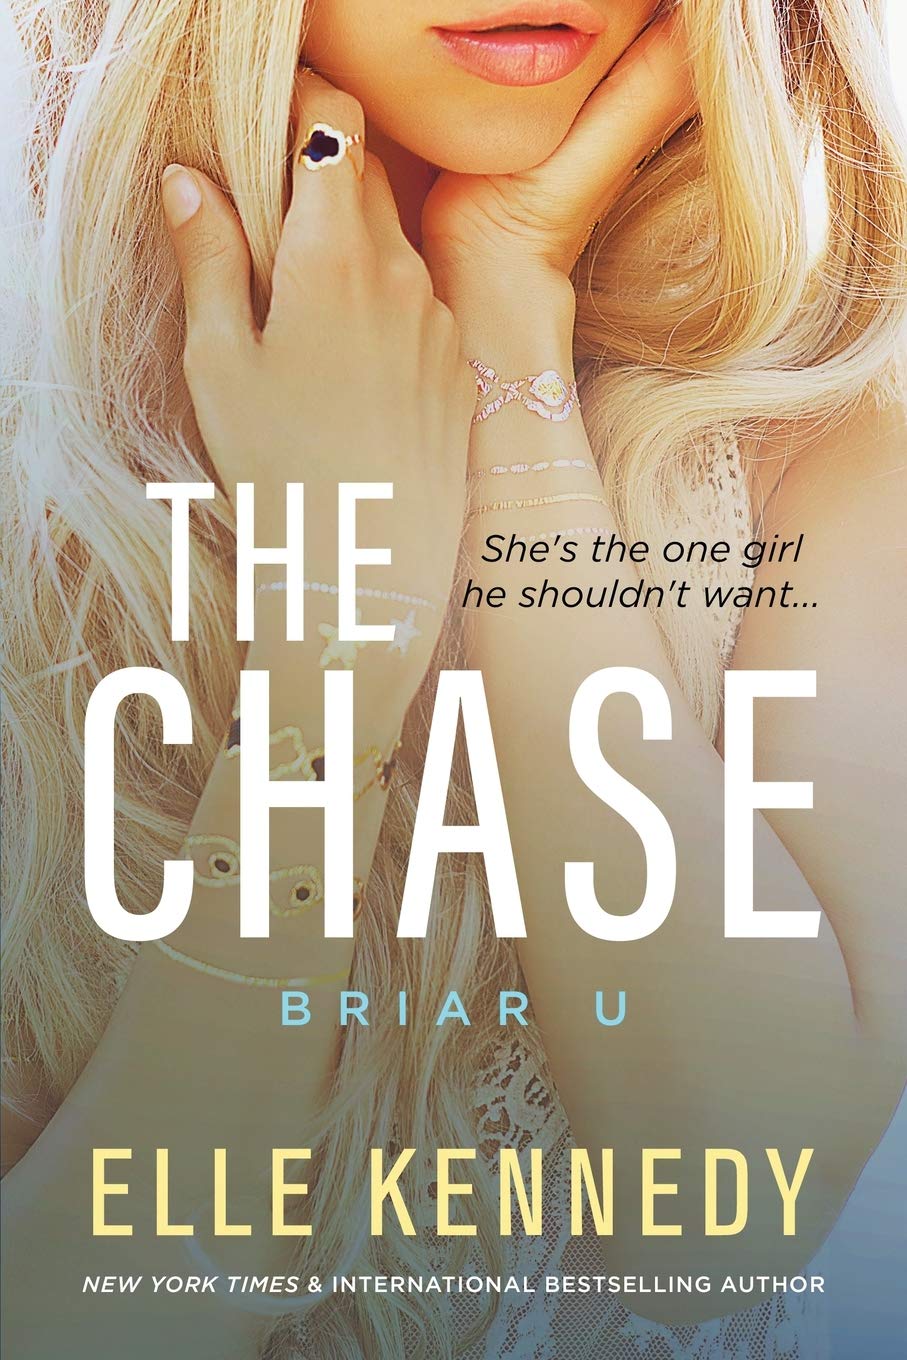 Briar u 1: the Chase